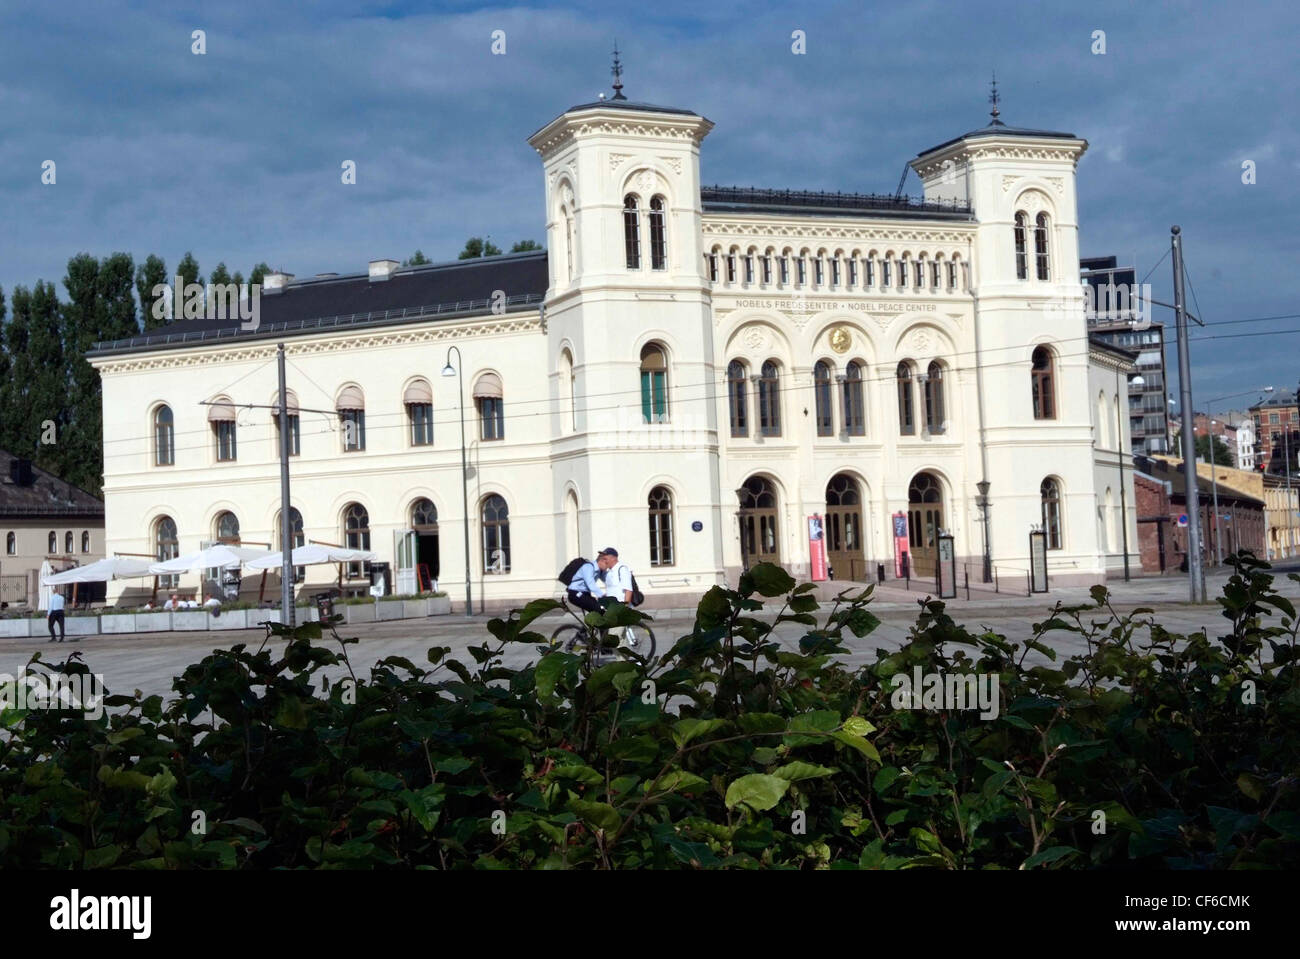 El Premio Nobel de Noruega Oslo Center, una antigua estación de ferrocarril. La ceremonia de entrega del premio se celebra anualmente en el Ayuntamiento de la ciudad cercana. Foto de stock